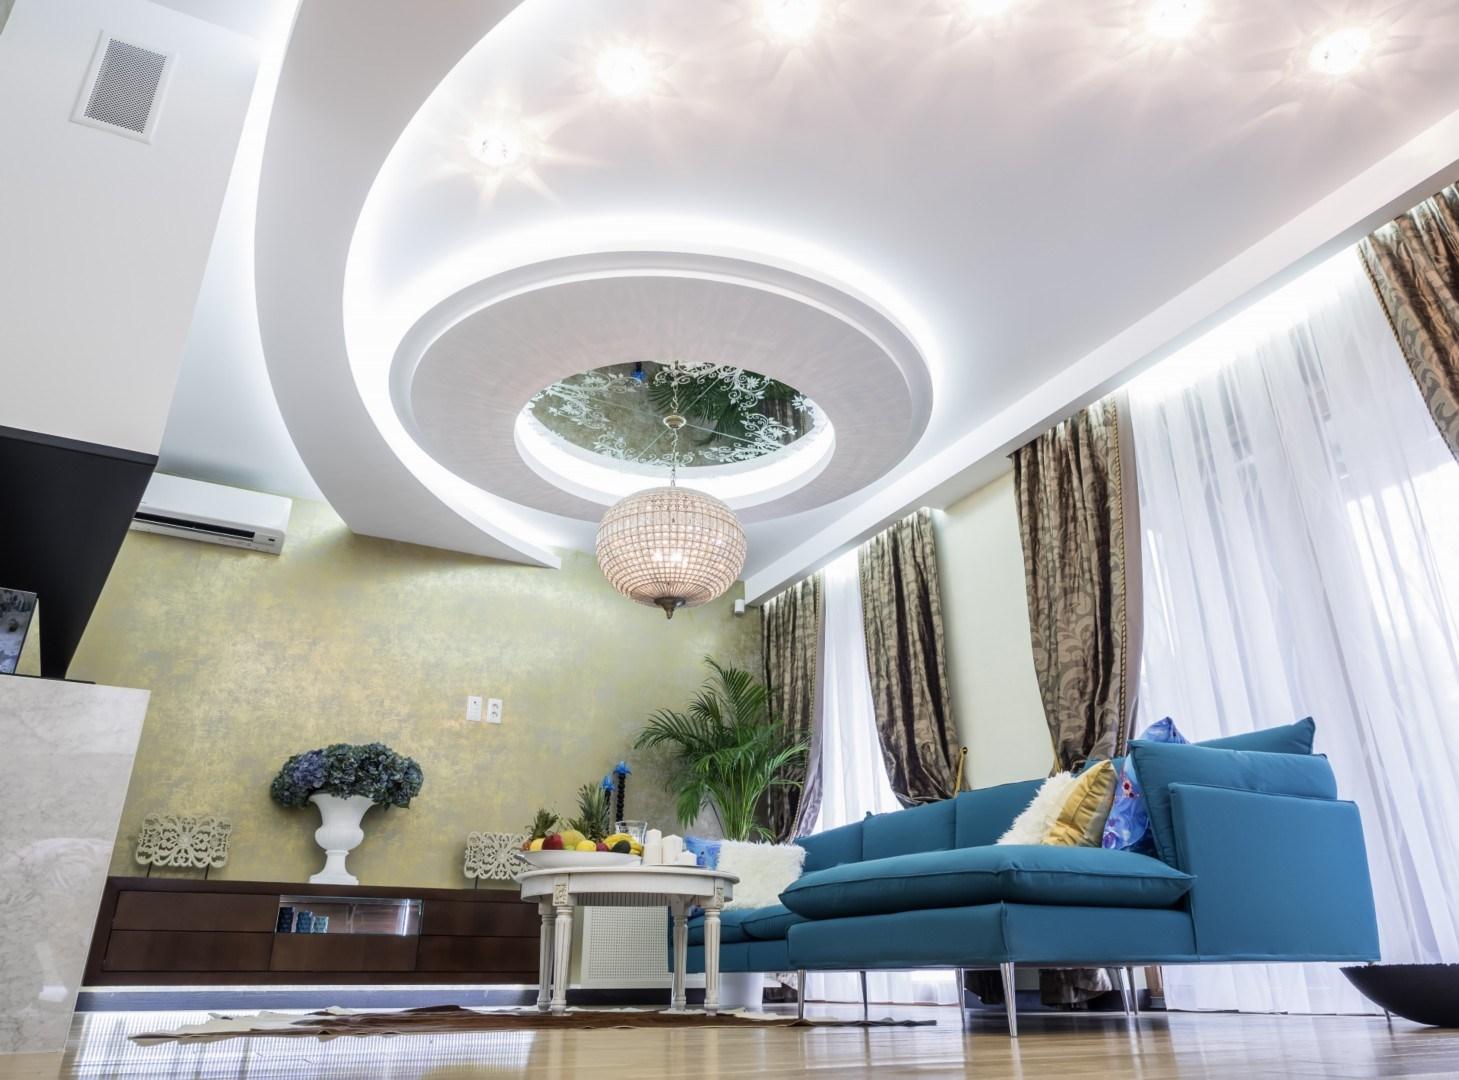 Trần thạch cao phòng khách đệ nhất: Trần thạch cao phòng khách đệ nhất sẽ khiến cho không gian sống của bạn trở nên đẳng cấp và sang trọng hơn. Với những thiết kế độc đáo, trần thạch cao đồng thời cũng giúp cho không gian trở nên rộng rãi và thoáng mát hơn.